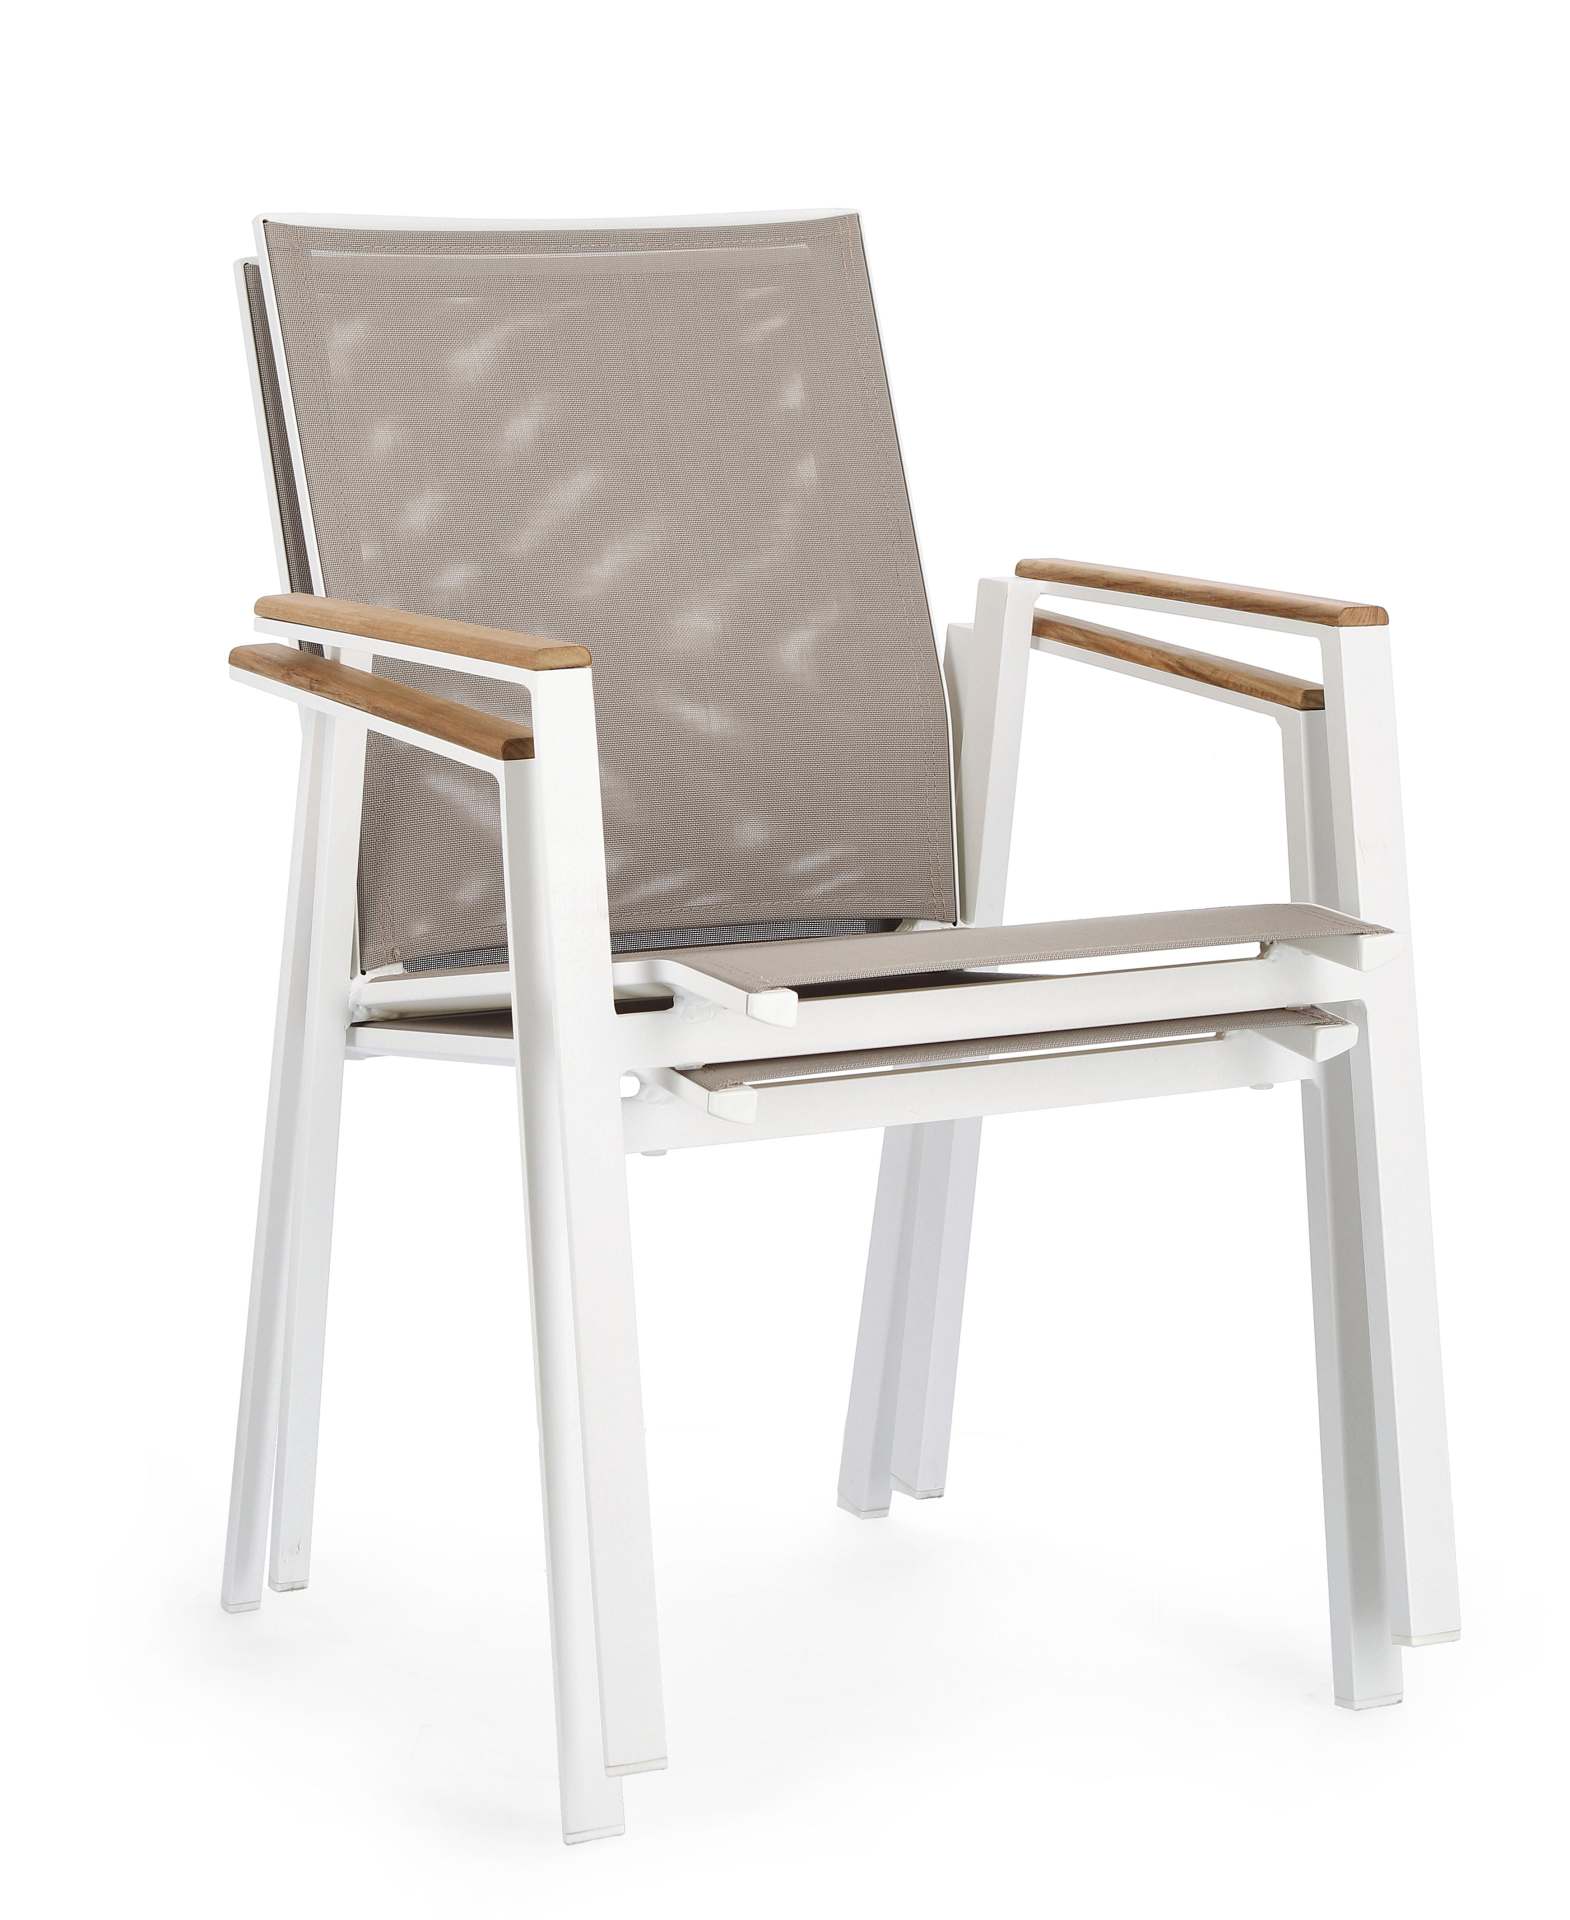 Der Gartenstuhl Cameron überzeugt mit seinem modernen Design. Gefertigt wurde er aus Textilene, welcher einen grauen Farbton besitzt. Das Gestell ist aus Aluminium und hat eine weiße Farbe. Der Stuhl verfügt über eine Sitzhöhe von 44 cm und ist für den Ou